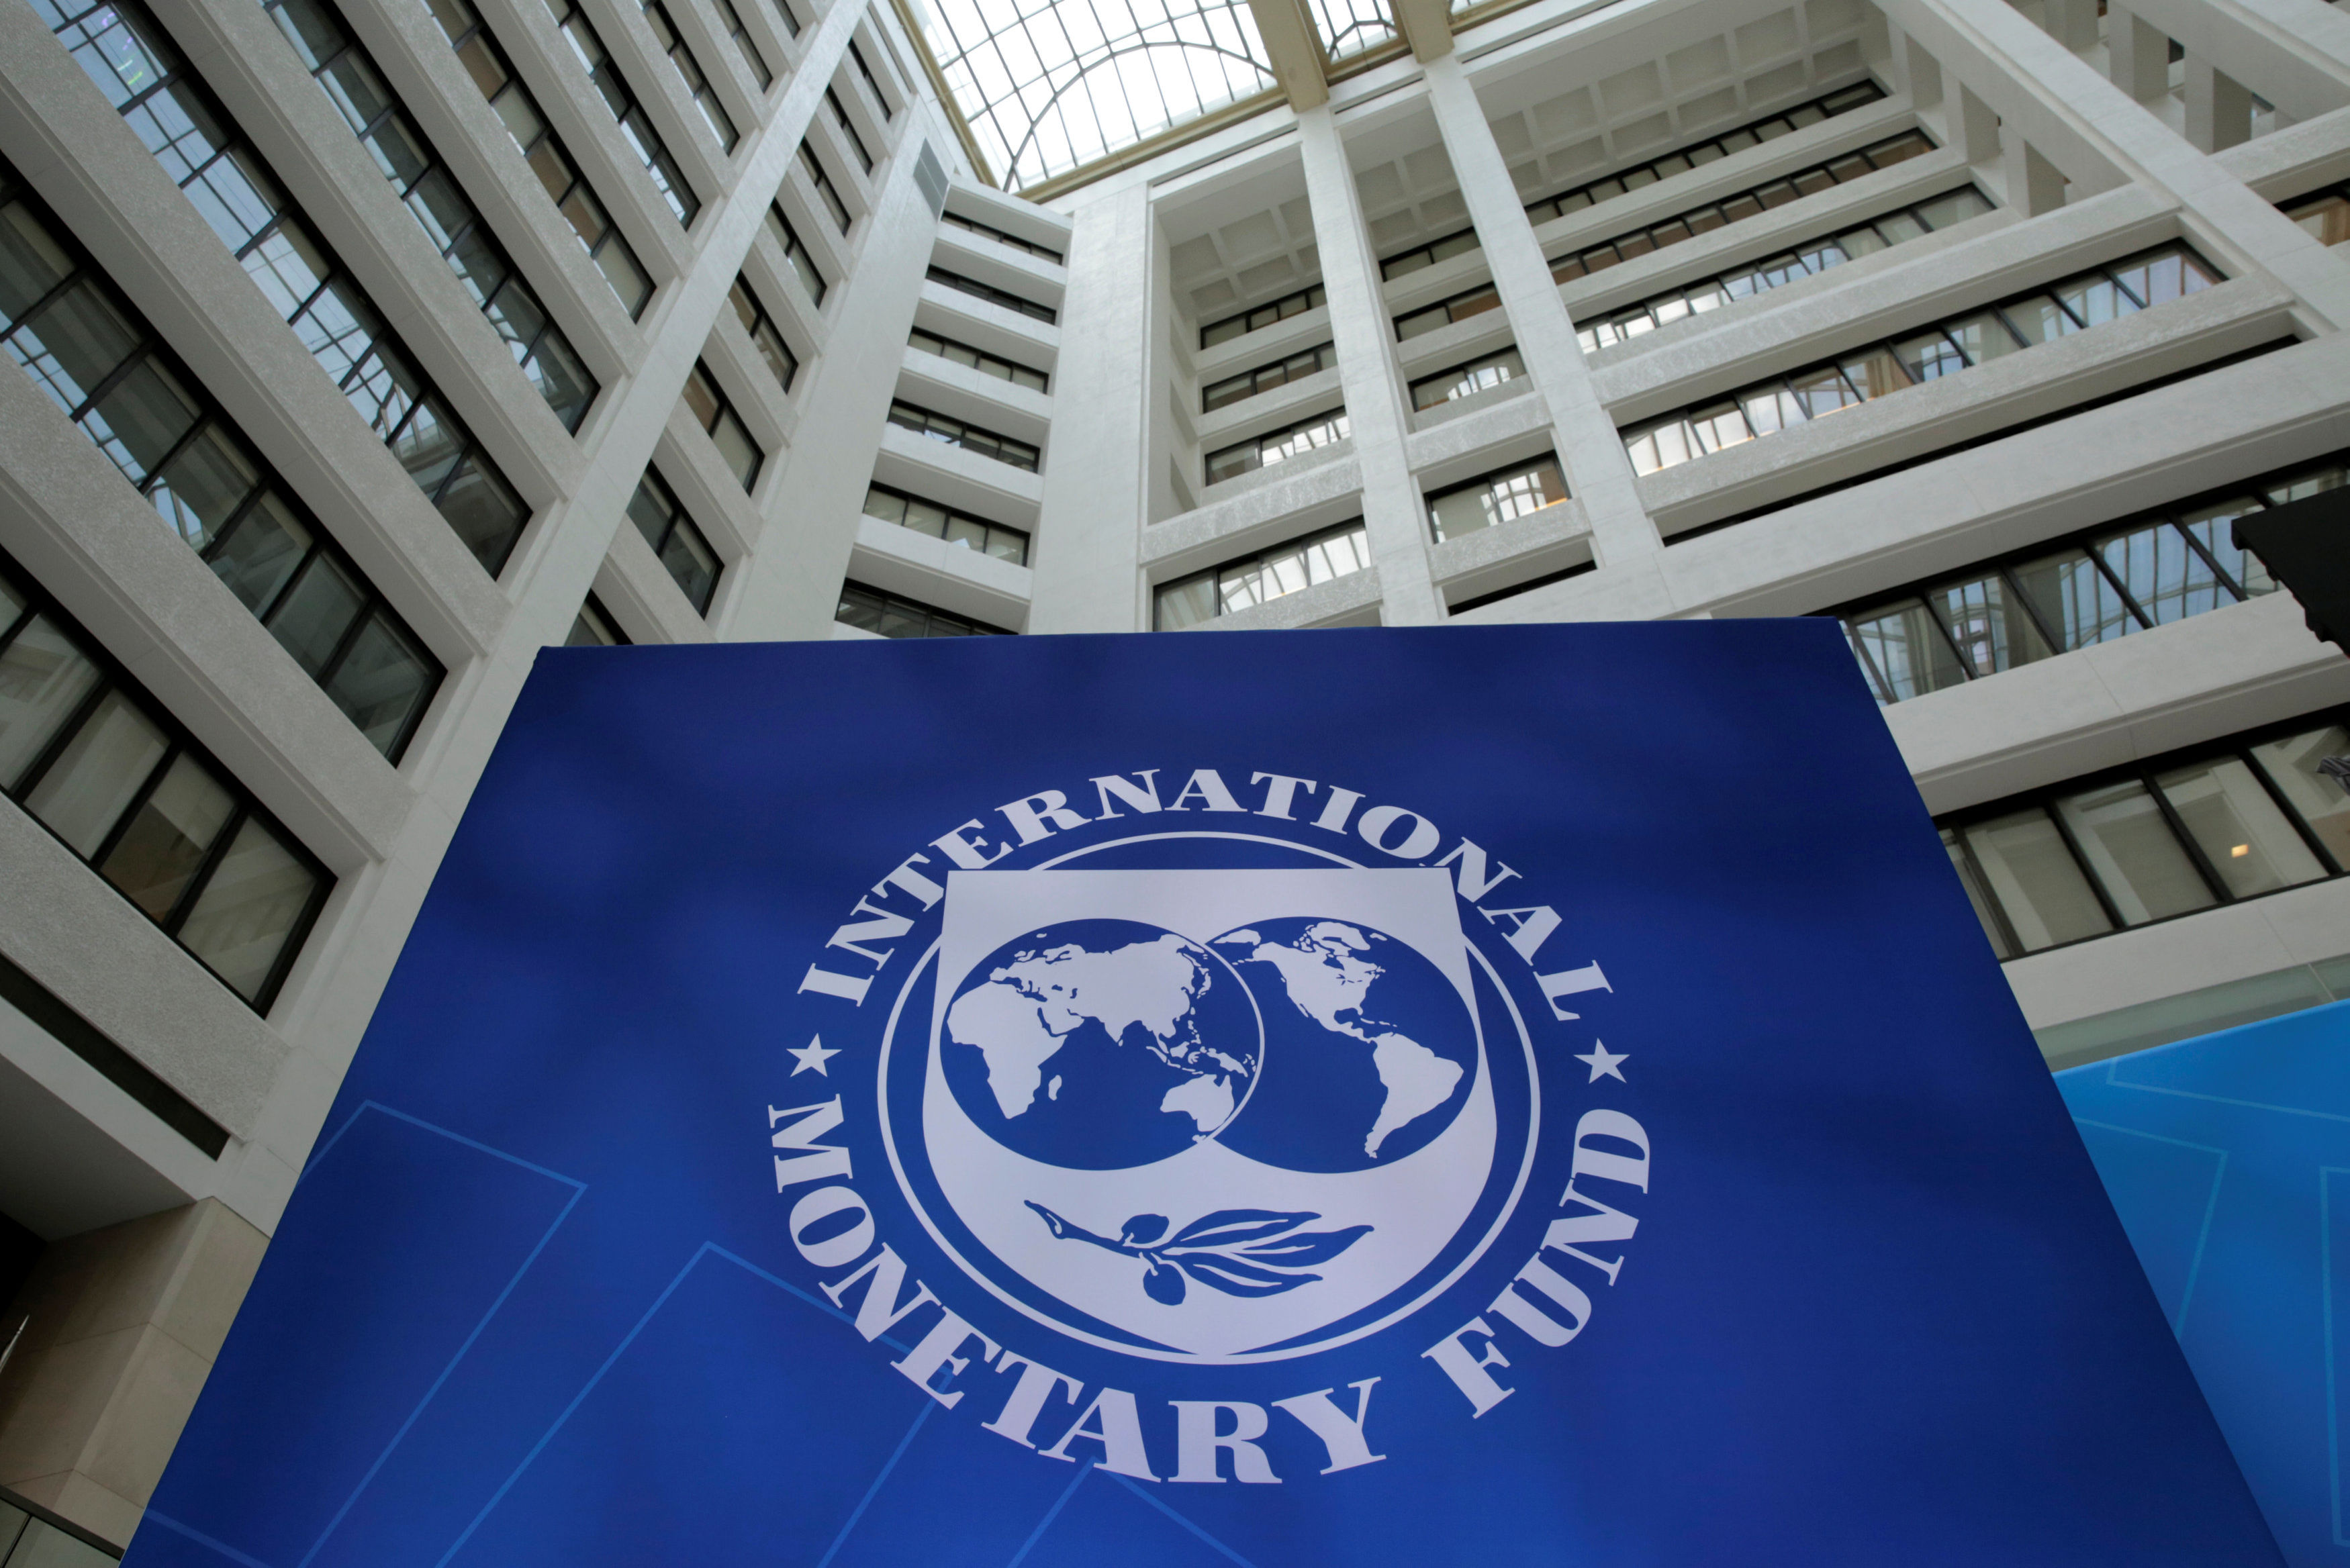 Фонд всемирный банк. Международный валютный фонд (МВФ) - International monetary Fund (IMF). Здание МВФ США. Флаг МВФ. Здание МВФ В Вашингтоне.